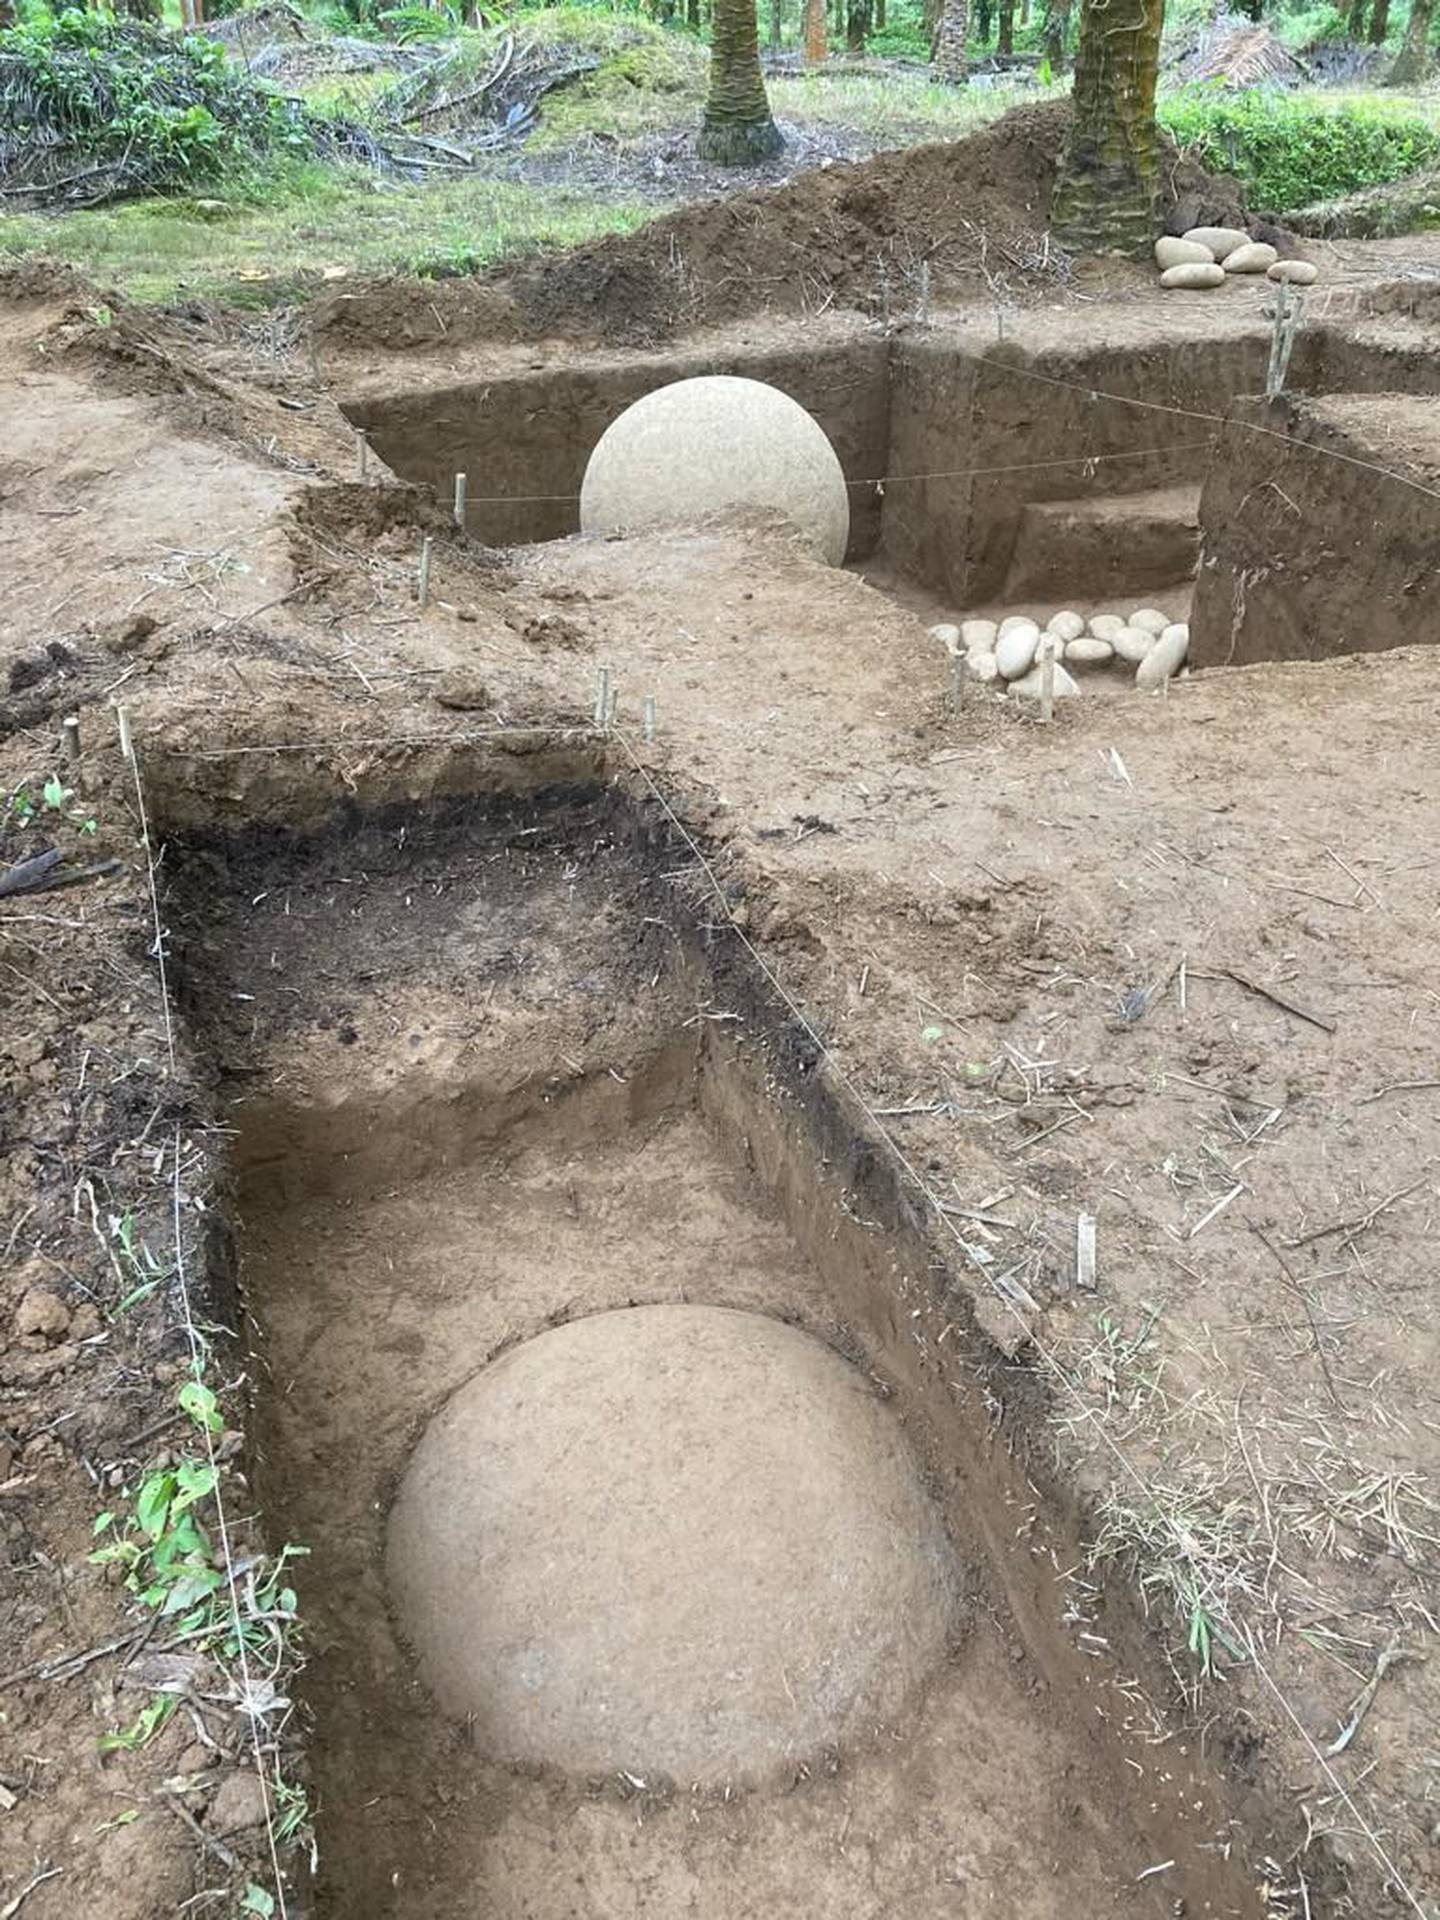 El arqueólogo del Museo Nacional, Francisco Corrales, confirmó este 15 de diciembre del 2021, el hallazgo de una esfera precolombina en su sitio original. 
Está en Finca 12, en Palmar Sur de Osa, muy cerca de la encontrada en julio pasado por trabajadores de la finca.